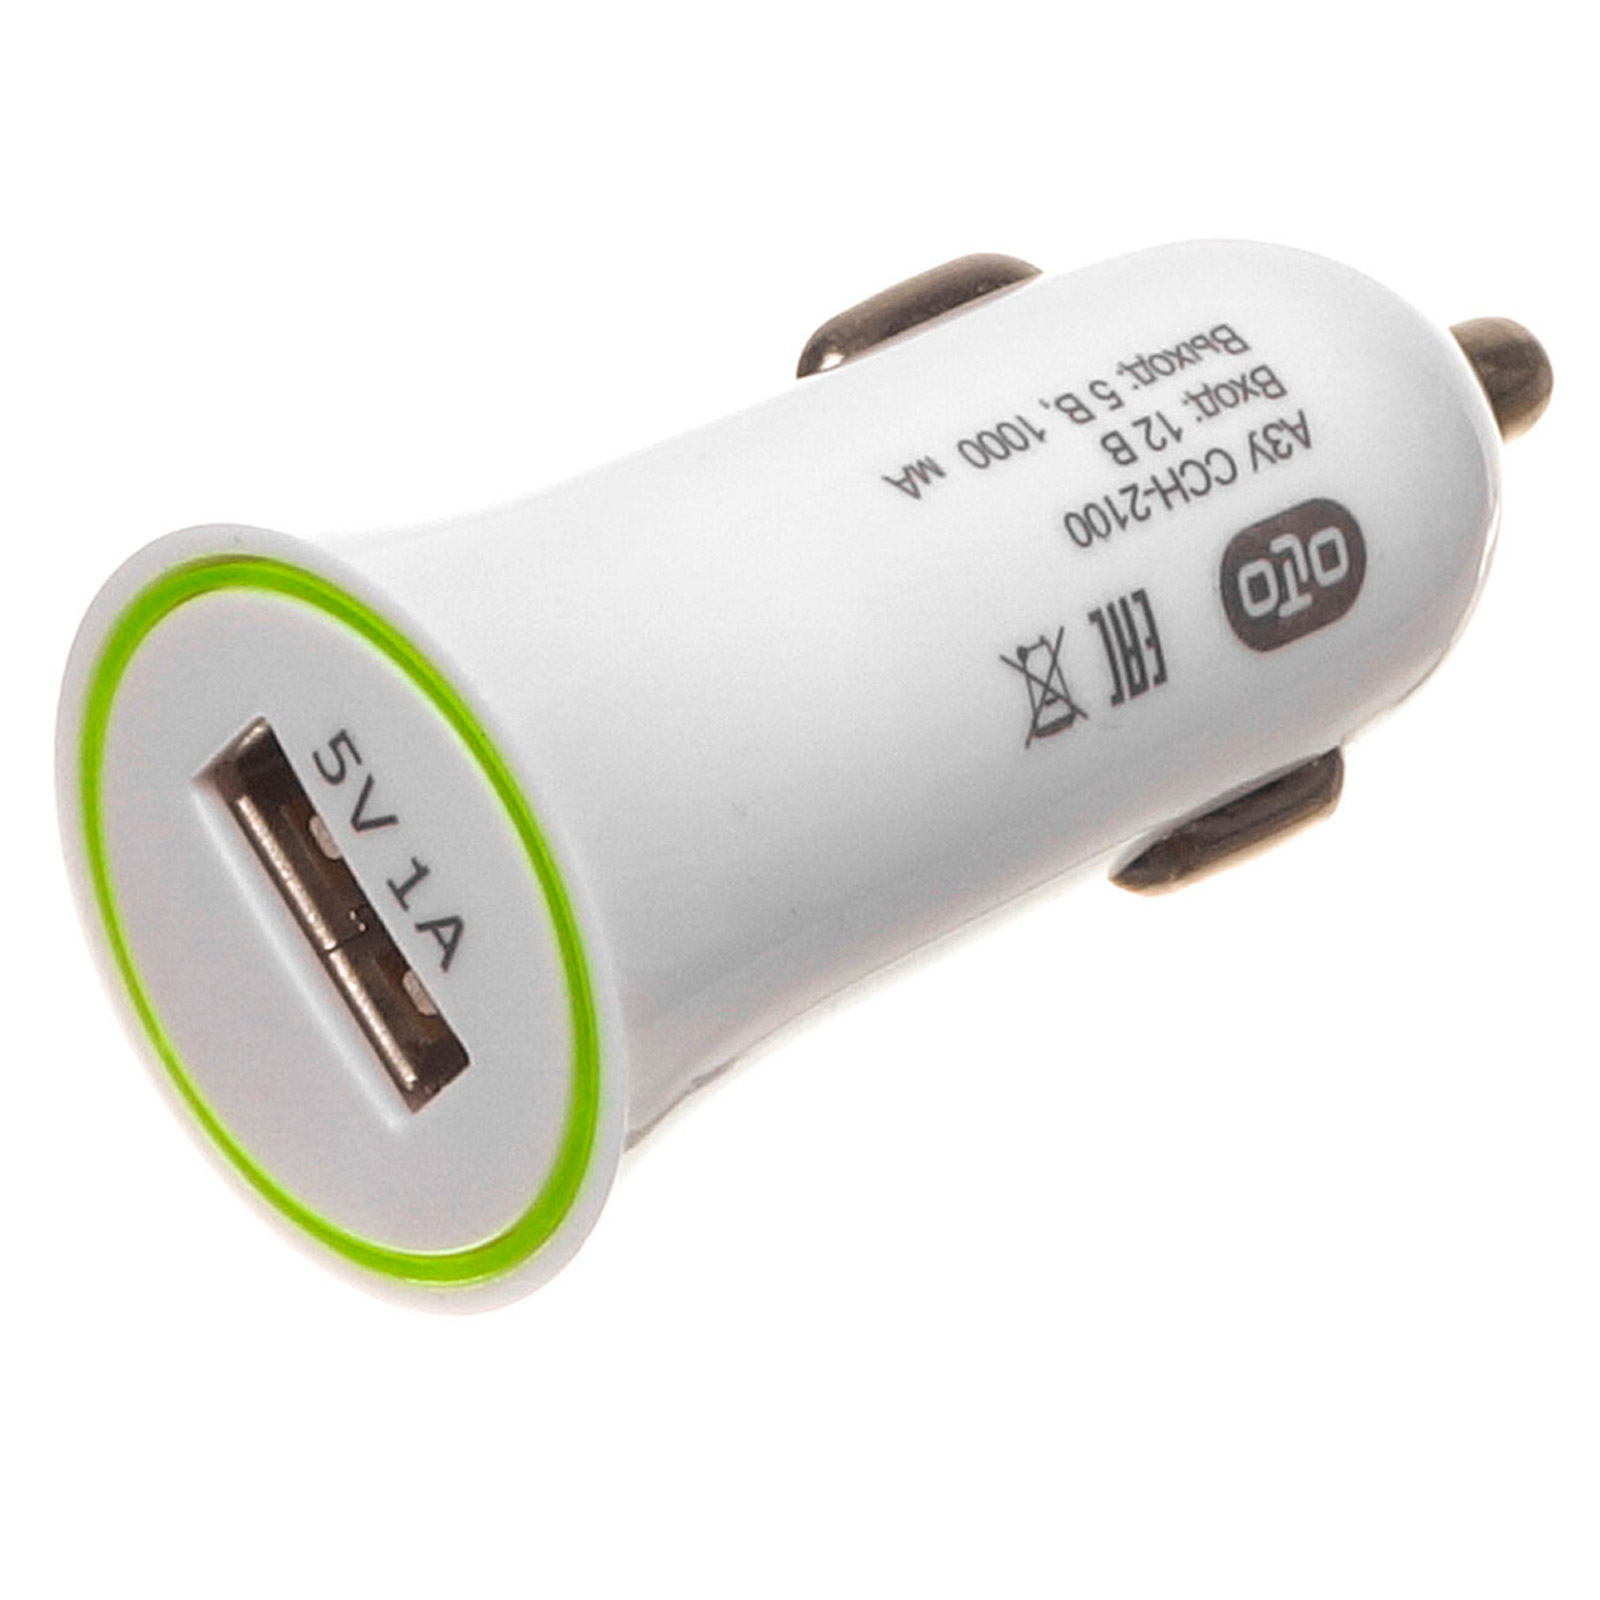 АЗУ (Автомобильное зарядное устройство) OLTO CCH-2105, 5V-1A, 1 USB порт, набор с кабелем APPLE Lightning 8-pin, цвет белый